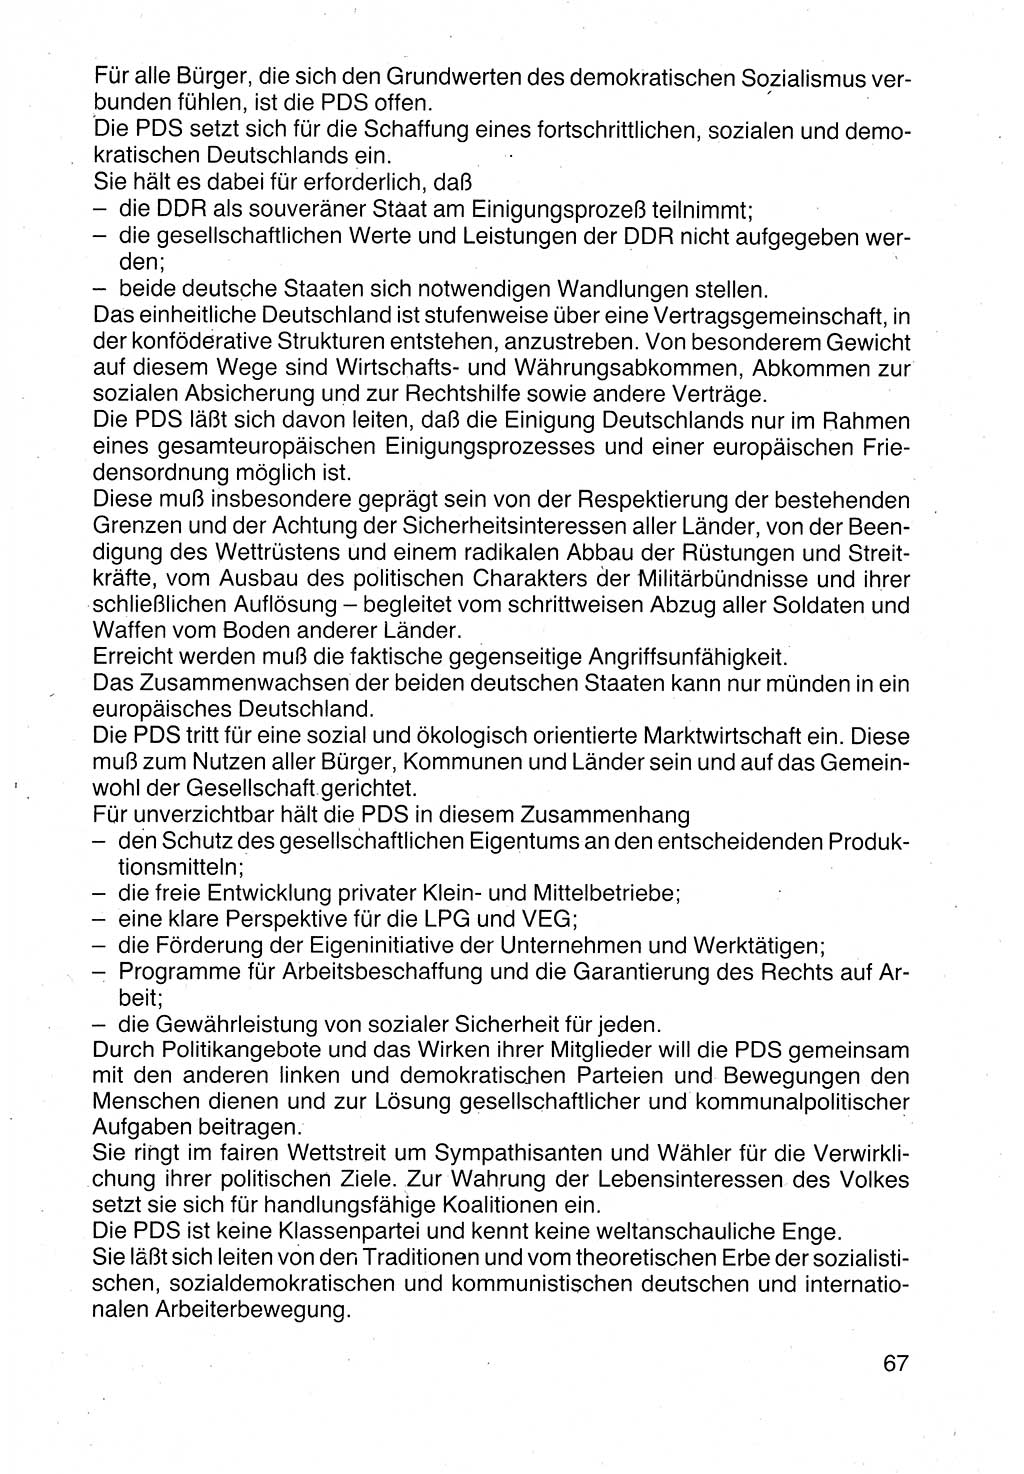 Politische Parteien und Bewegungen der DDR (Deutsche Demokratische Republik) über sich selbst 1990, Seite 67 (Pol. Part. Bew. DDR 1990, S. 67)